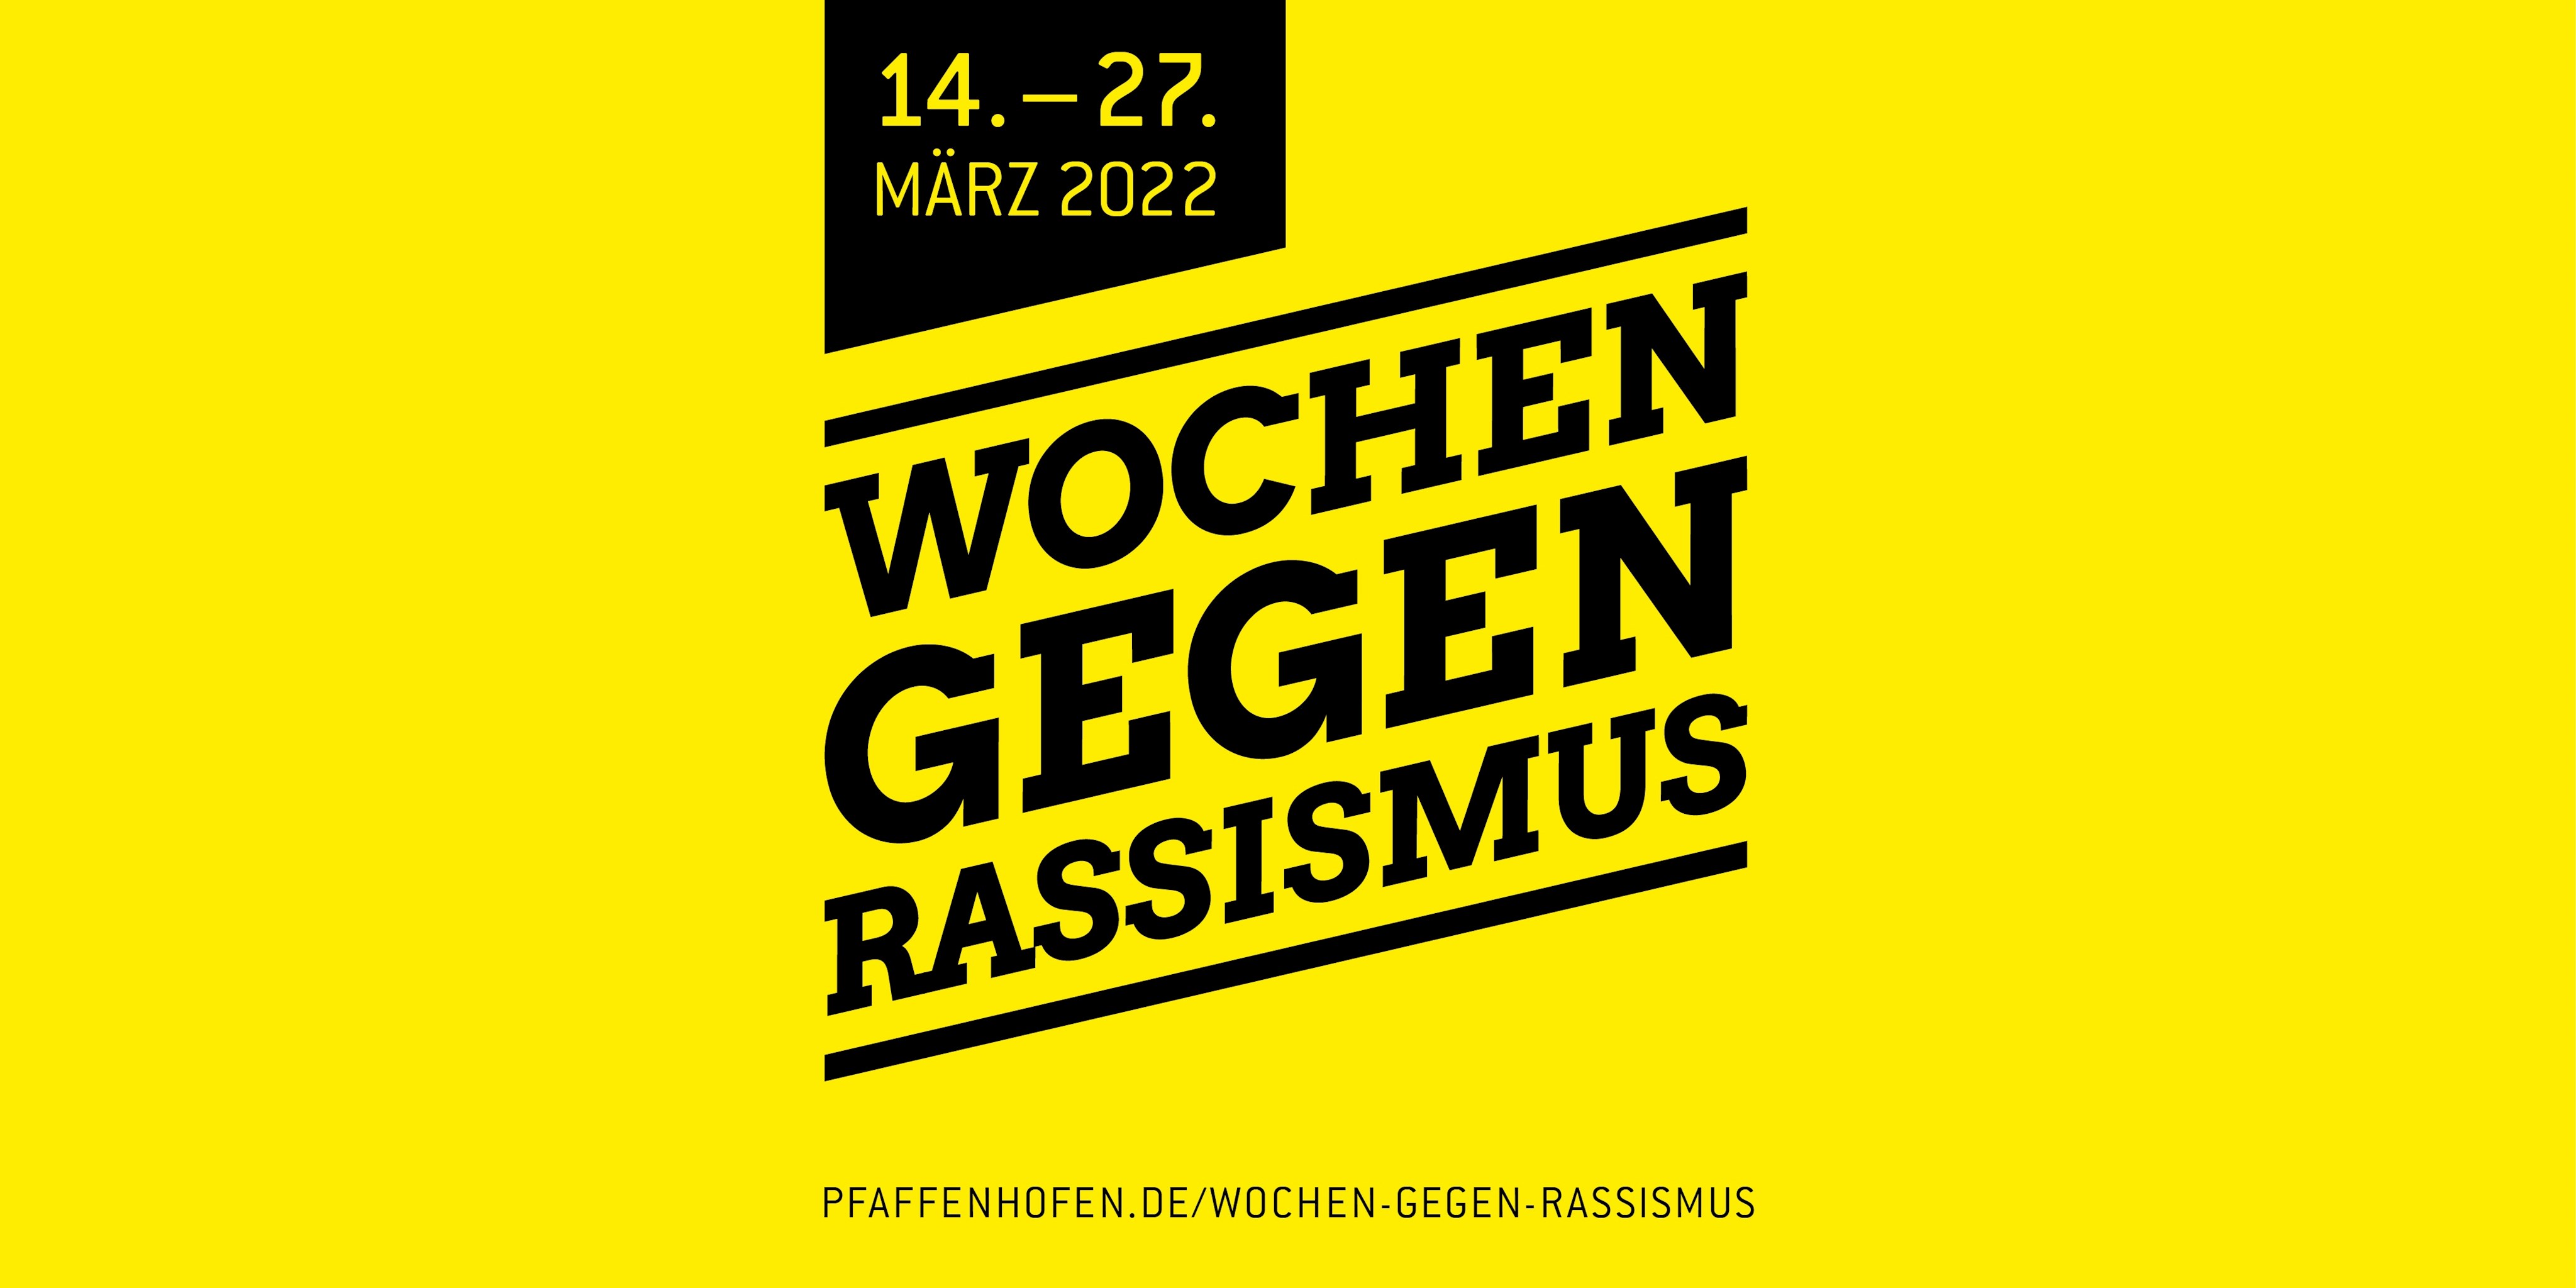 Internationale Wochen gegen Rassismus im Landkreis Pfaffenhofen